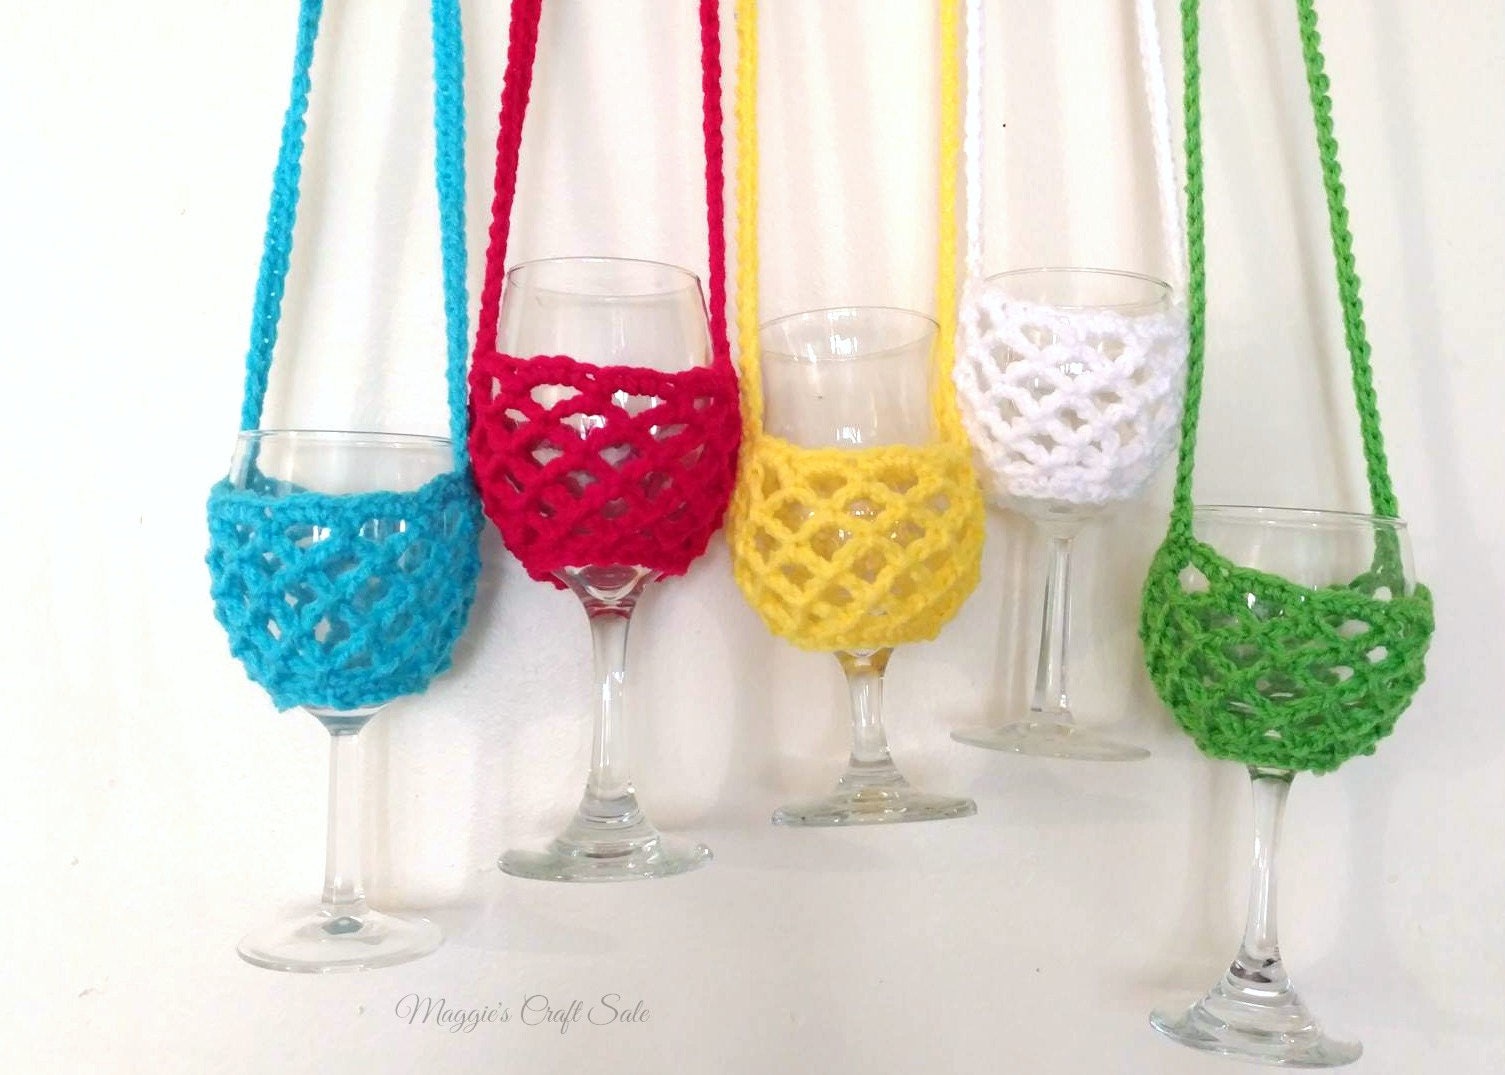 Crochet Wine Glass Holder, Crochet Glass Holder, Wine Glass Necklace Holder,  Glass Cup Holder, Wine Holder With Neck Strap, Crochet Holder 